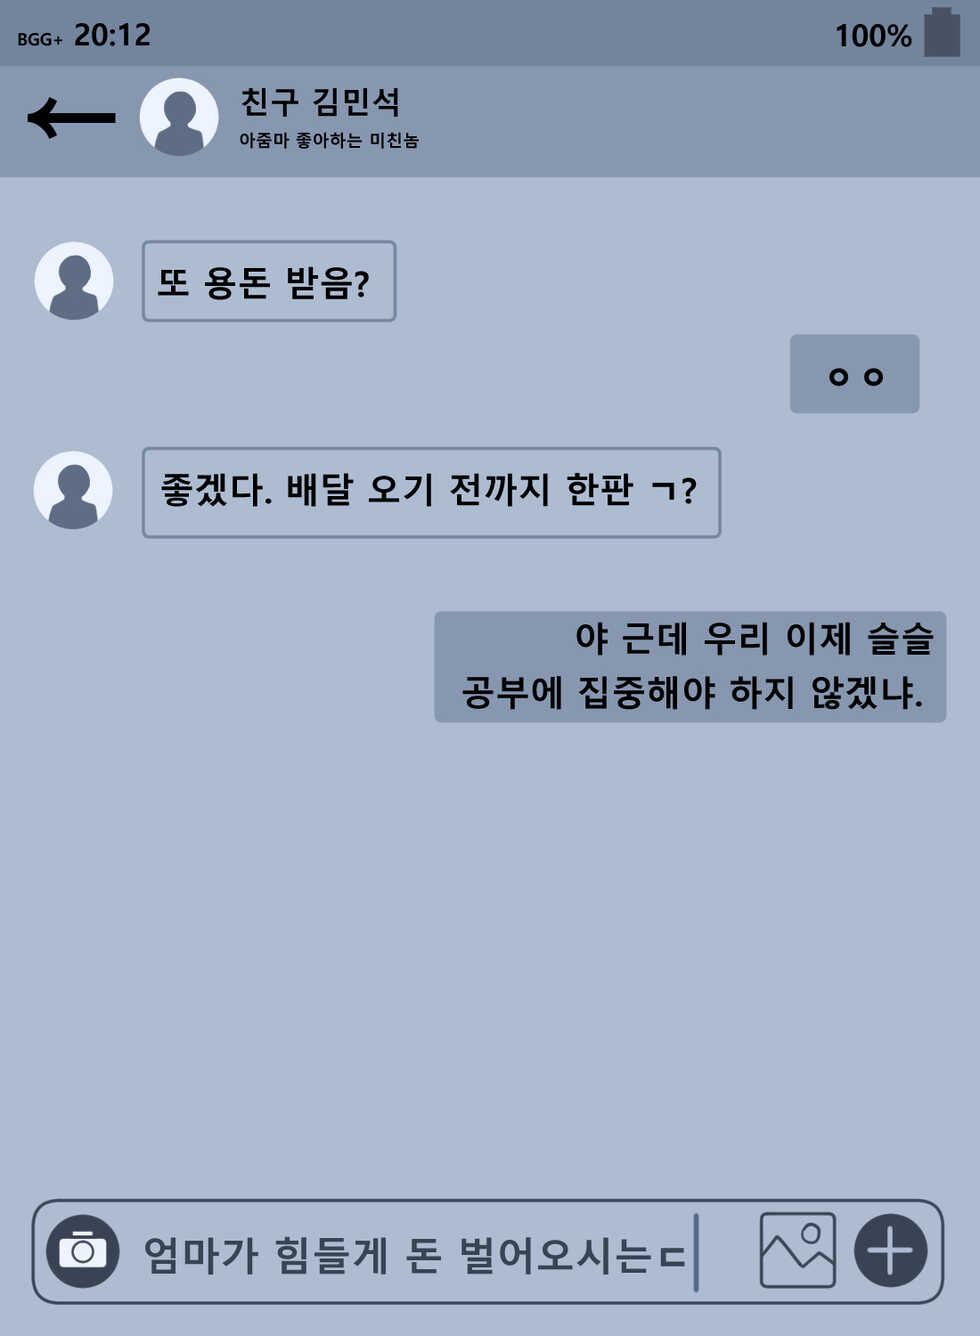 [BlackGG] Hyun Sook Lee 45 years old [Korean] - Page 28